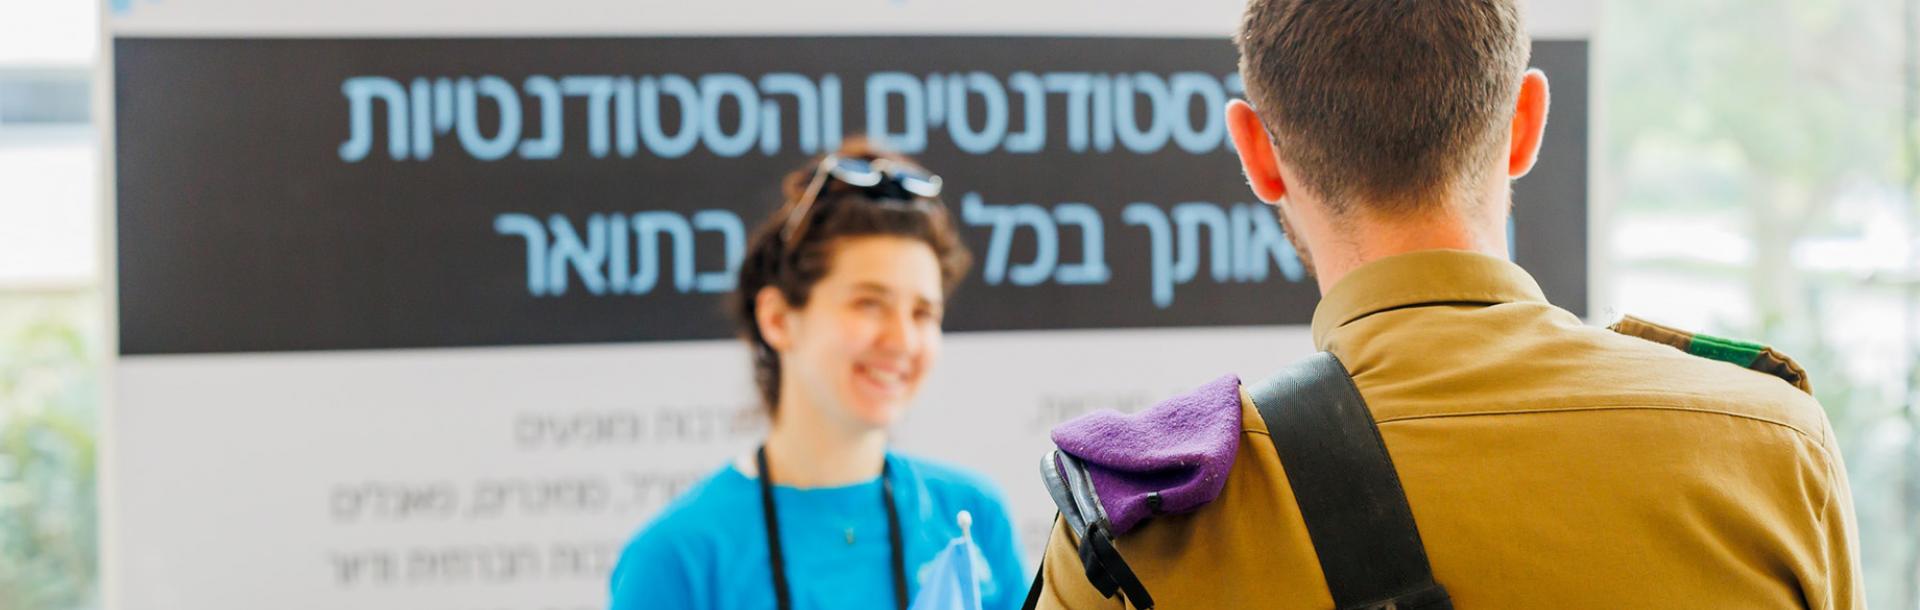 רק באוניברסיטת תל אביב: קבלה ללא פסיכומטרי למשרתי.ות מילואים 